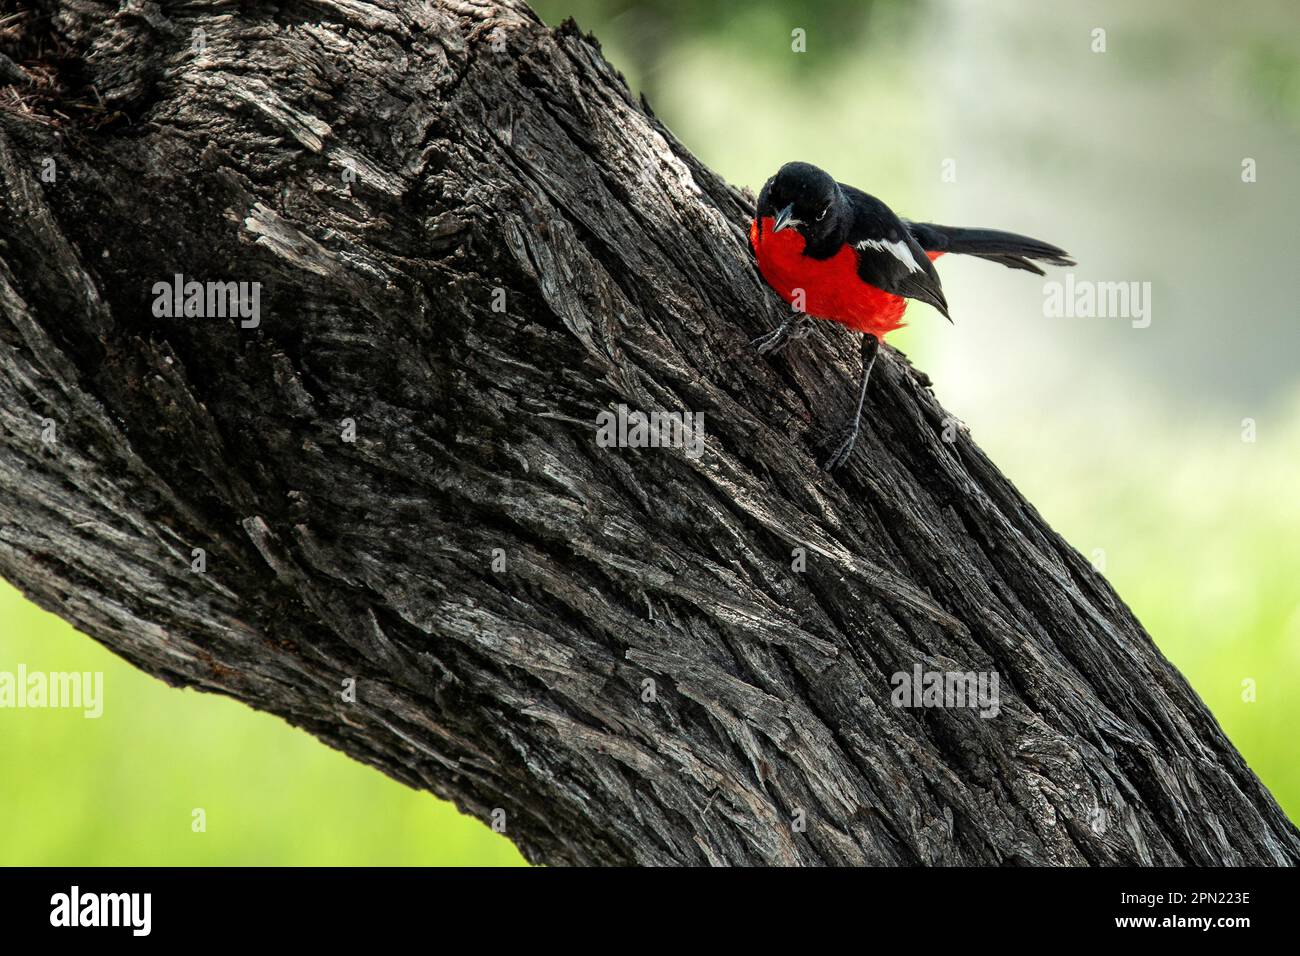 Crimson breasted shrike on branch Stock Photo